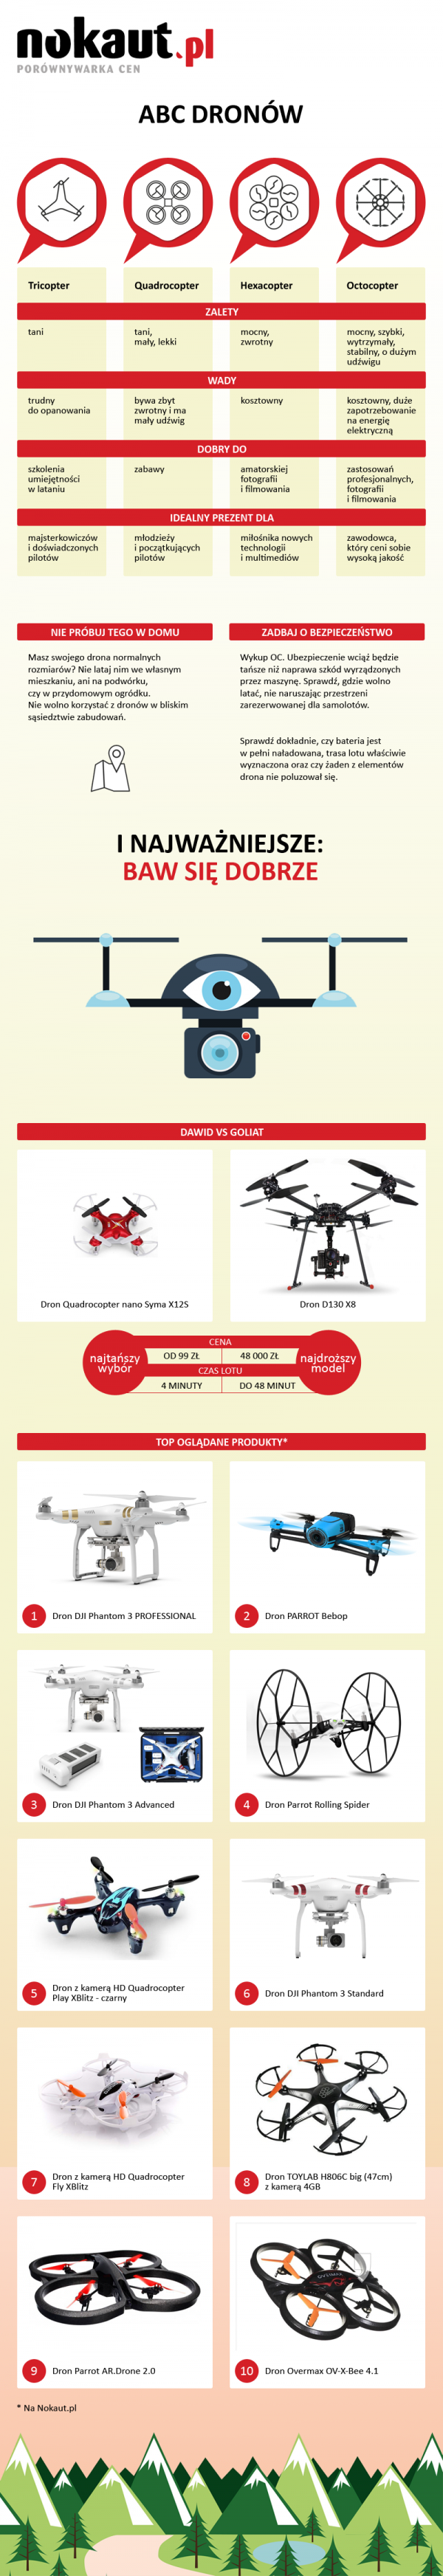 infografika nokaut abc dronów